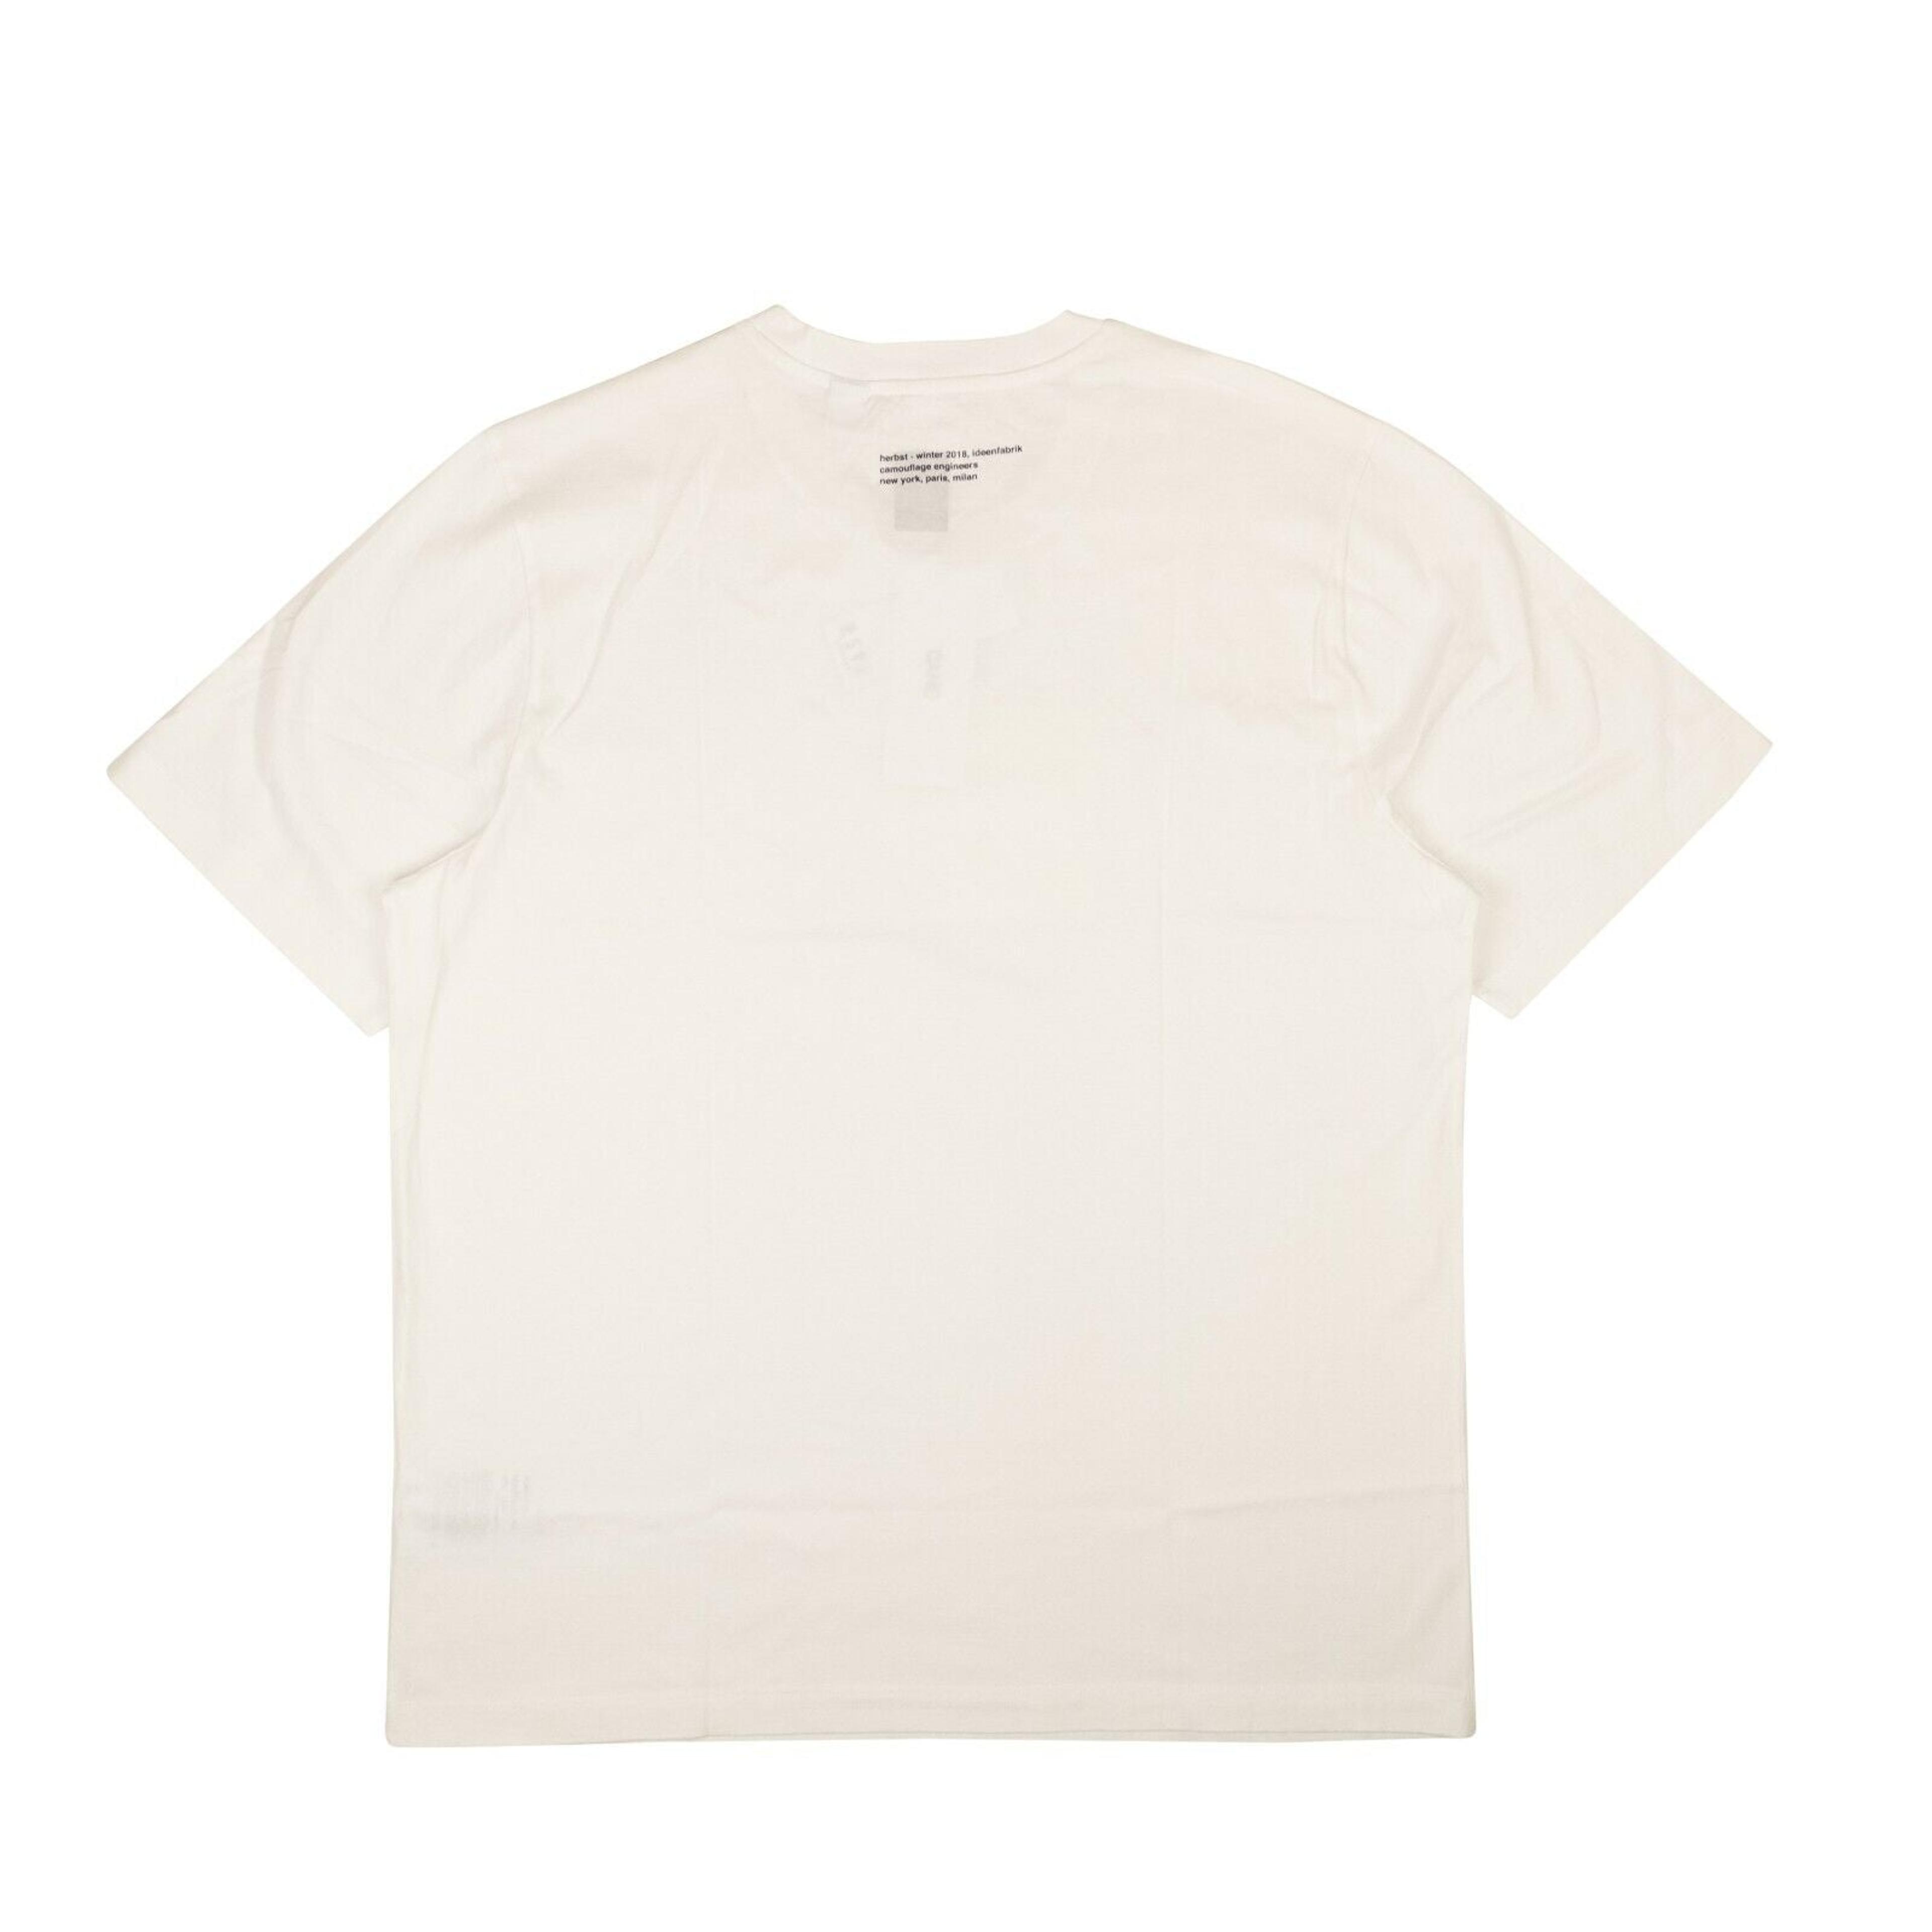 Alternate View 2 of White Maciunas T-Shirt